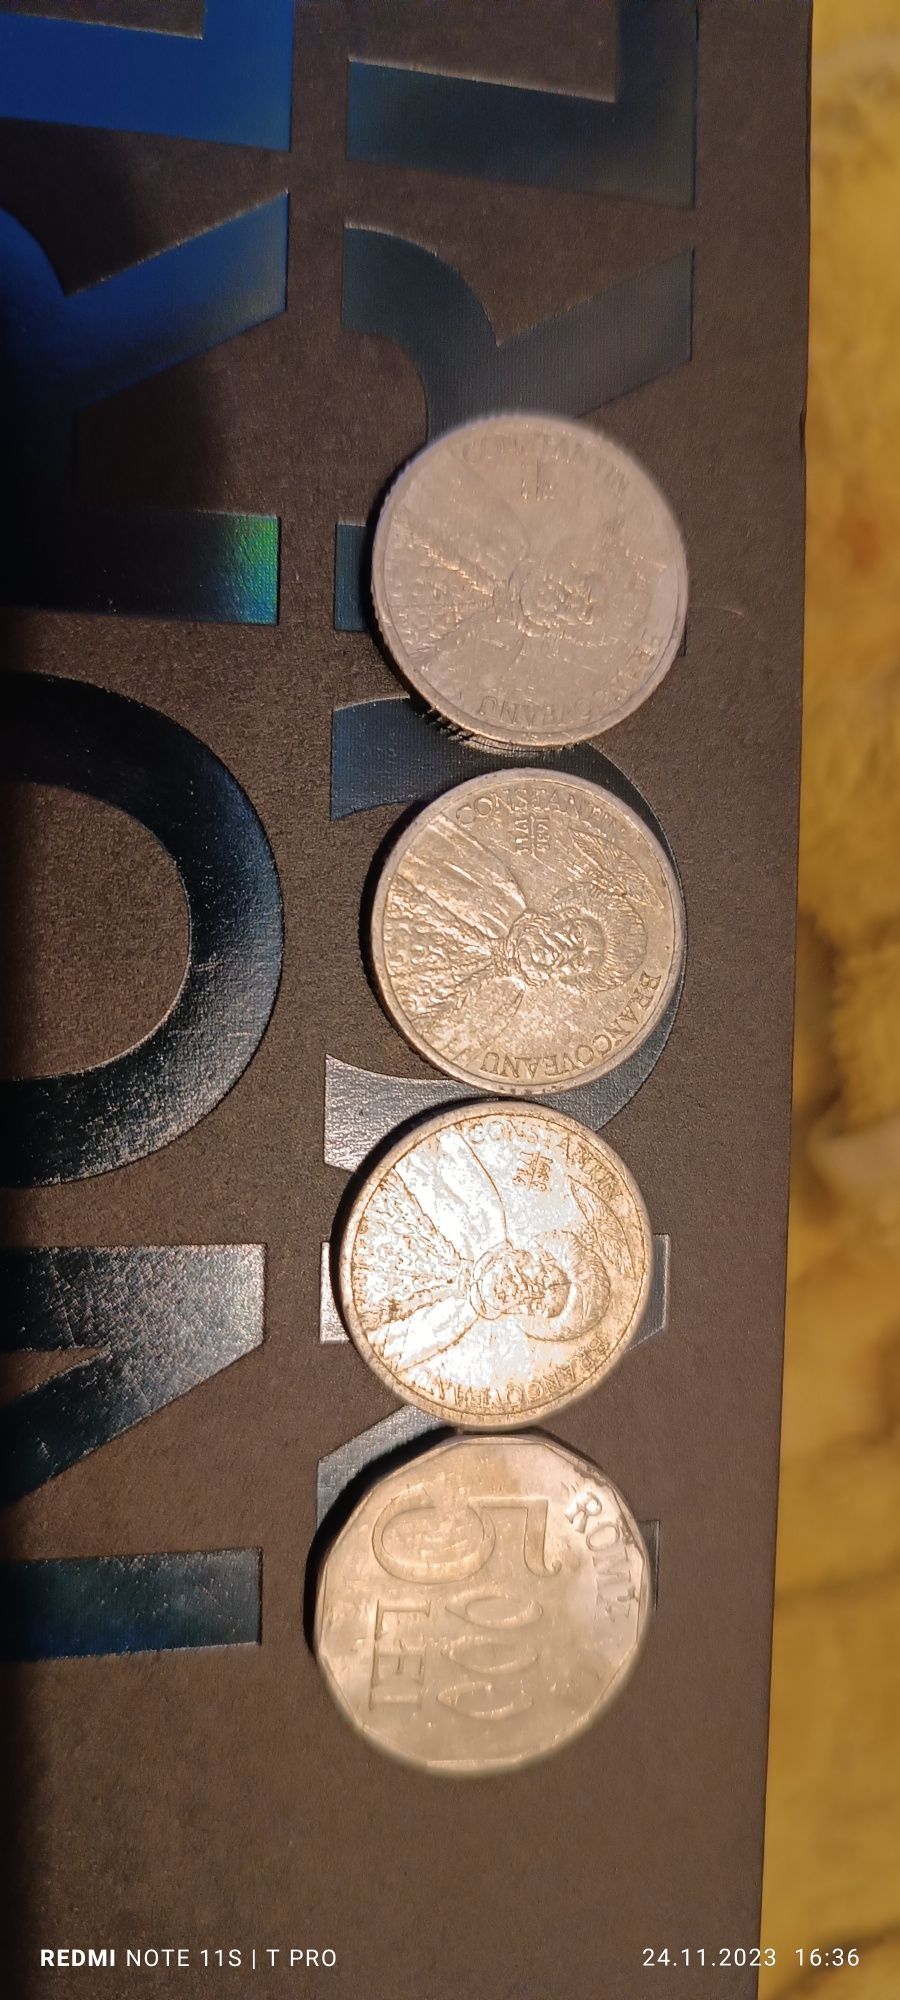 Monede 3x1000. 2 an 2000 1 an 2002 1x5000 an 2002